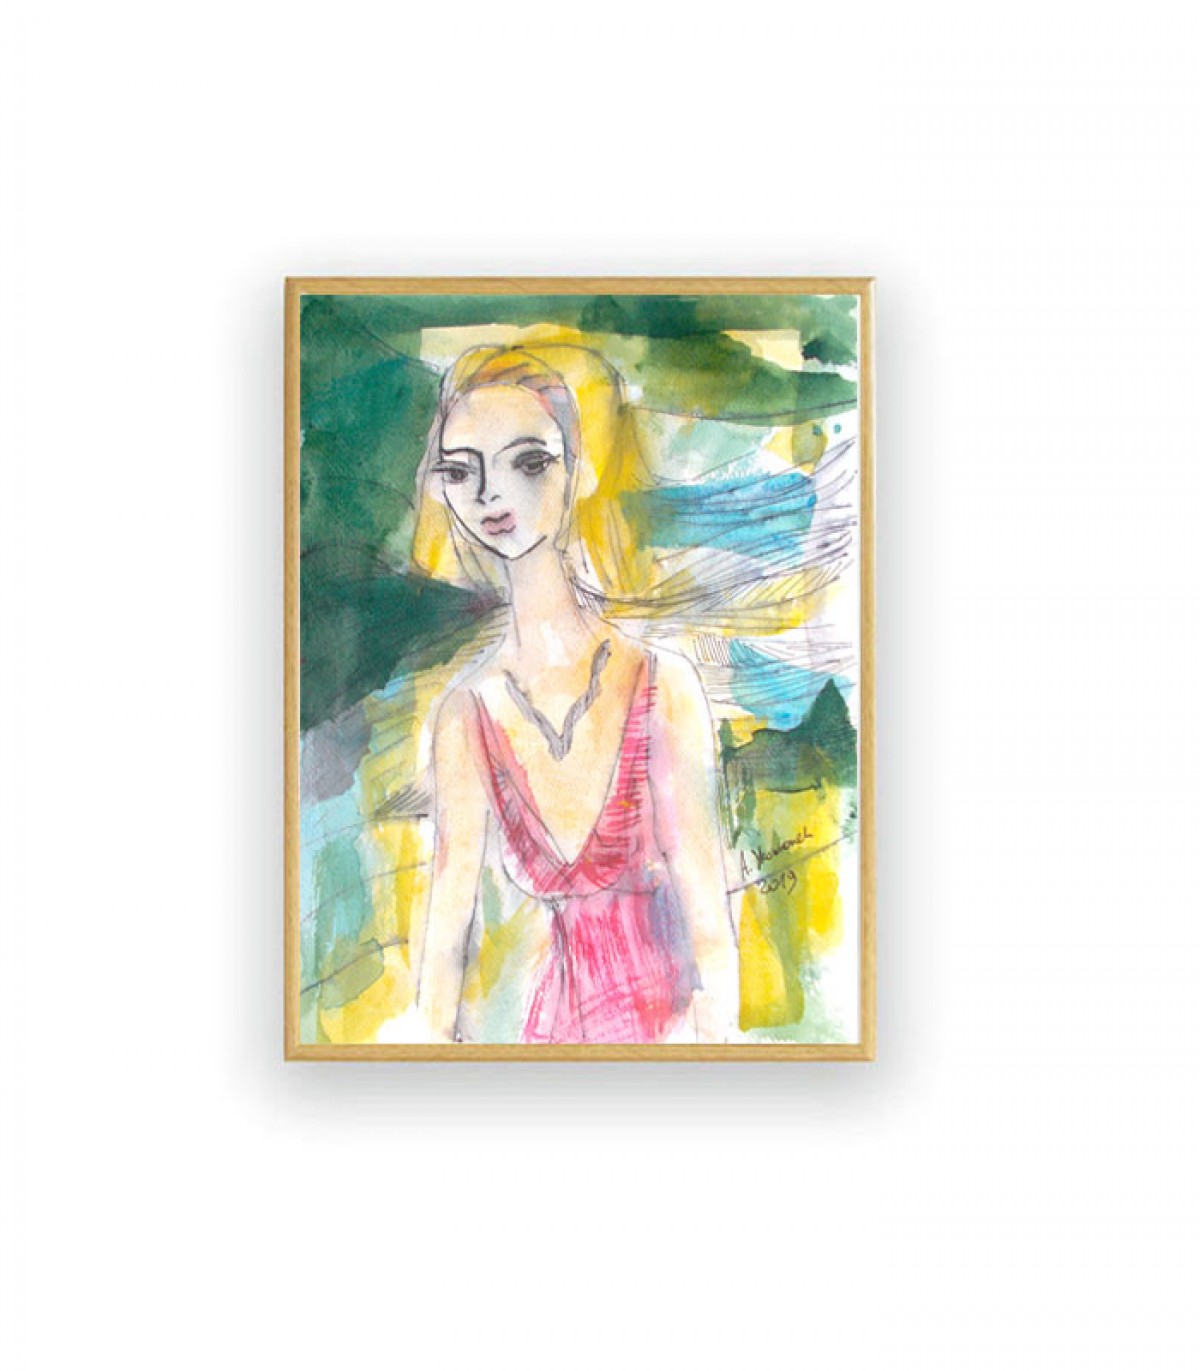 ładna akwarela z dziewczyną, malowany ręcznie obraz z kobietą, kolorowa grafika do salonu, kobieta obraz na ścianę